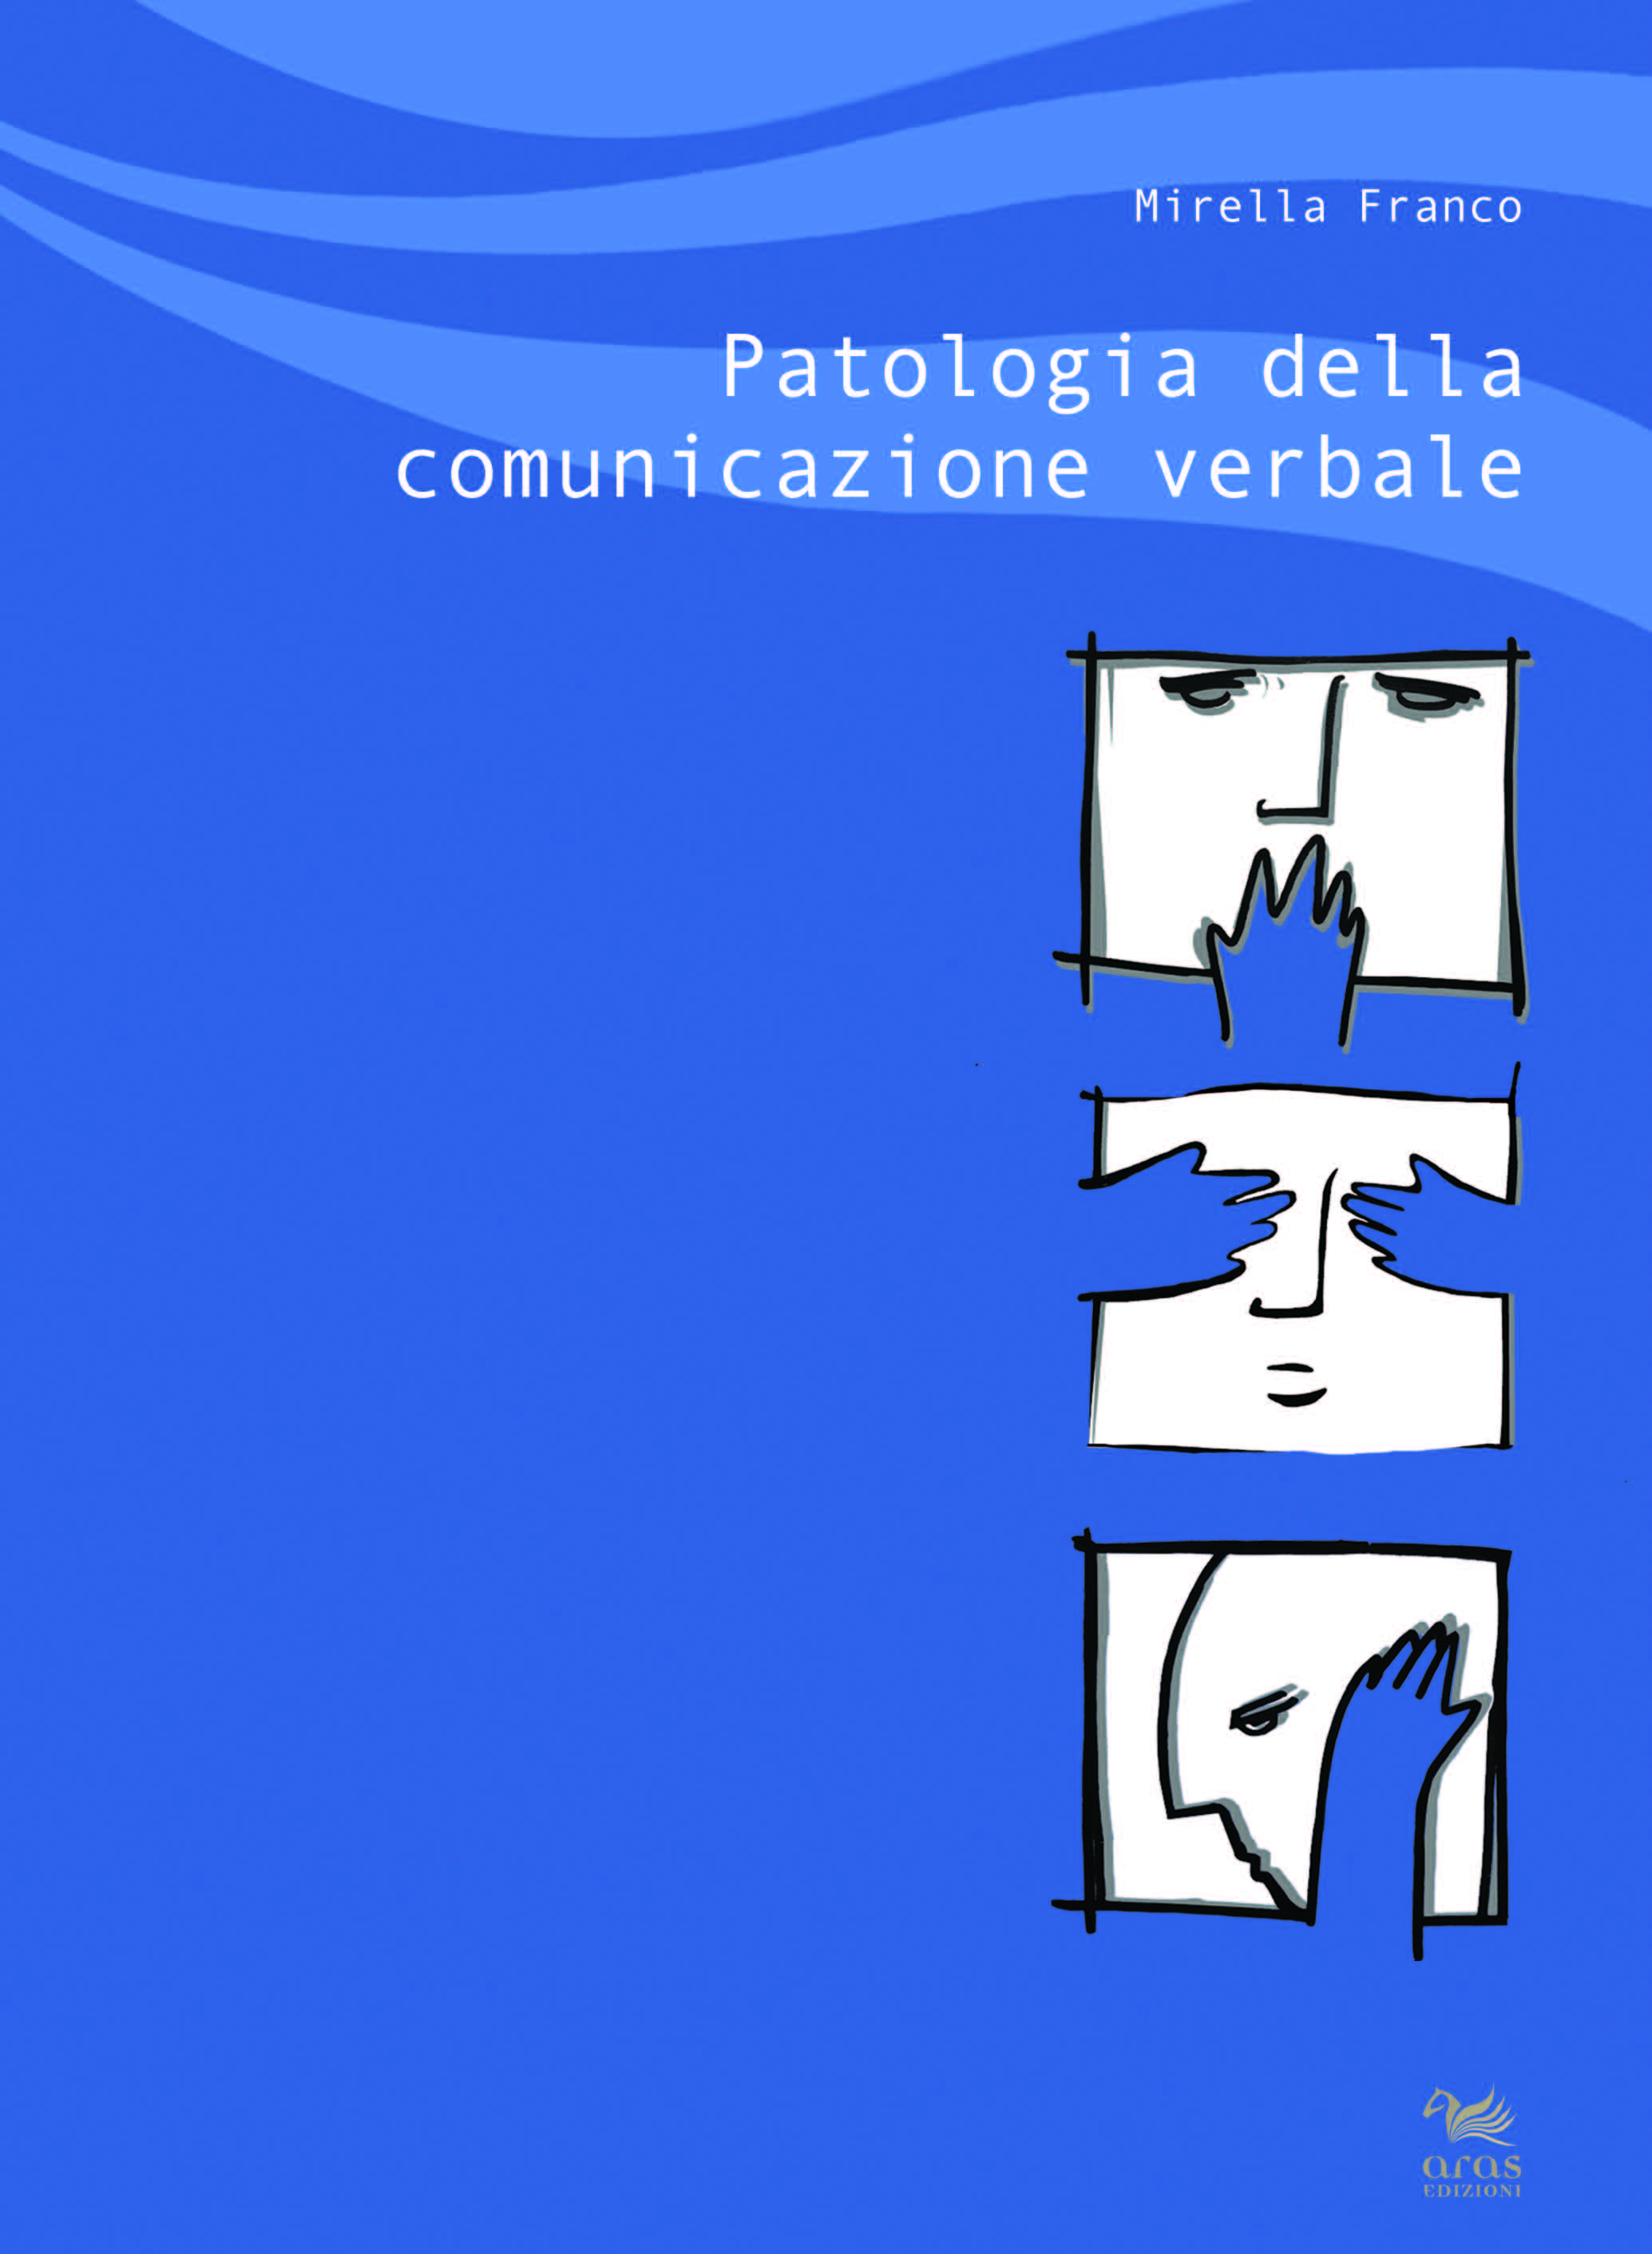 E-book, Patologia della comunicazione verbale, Aras